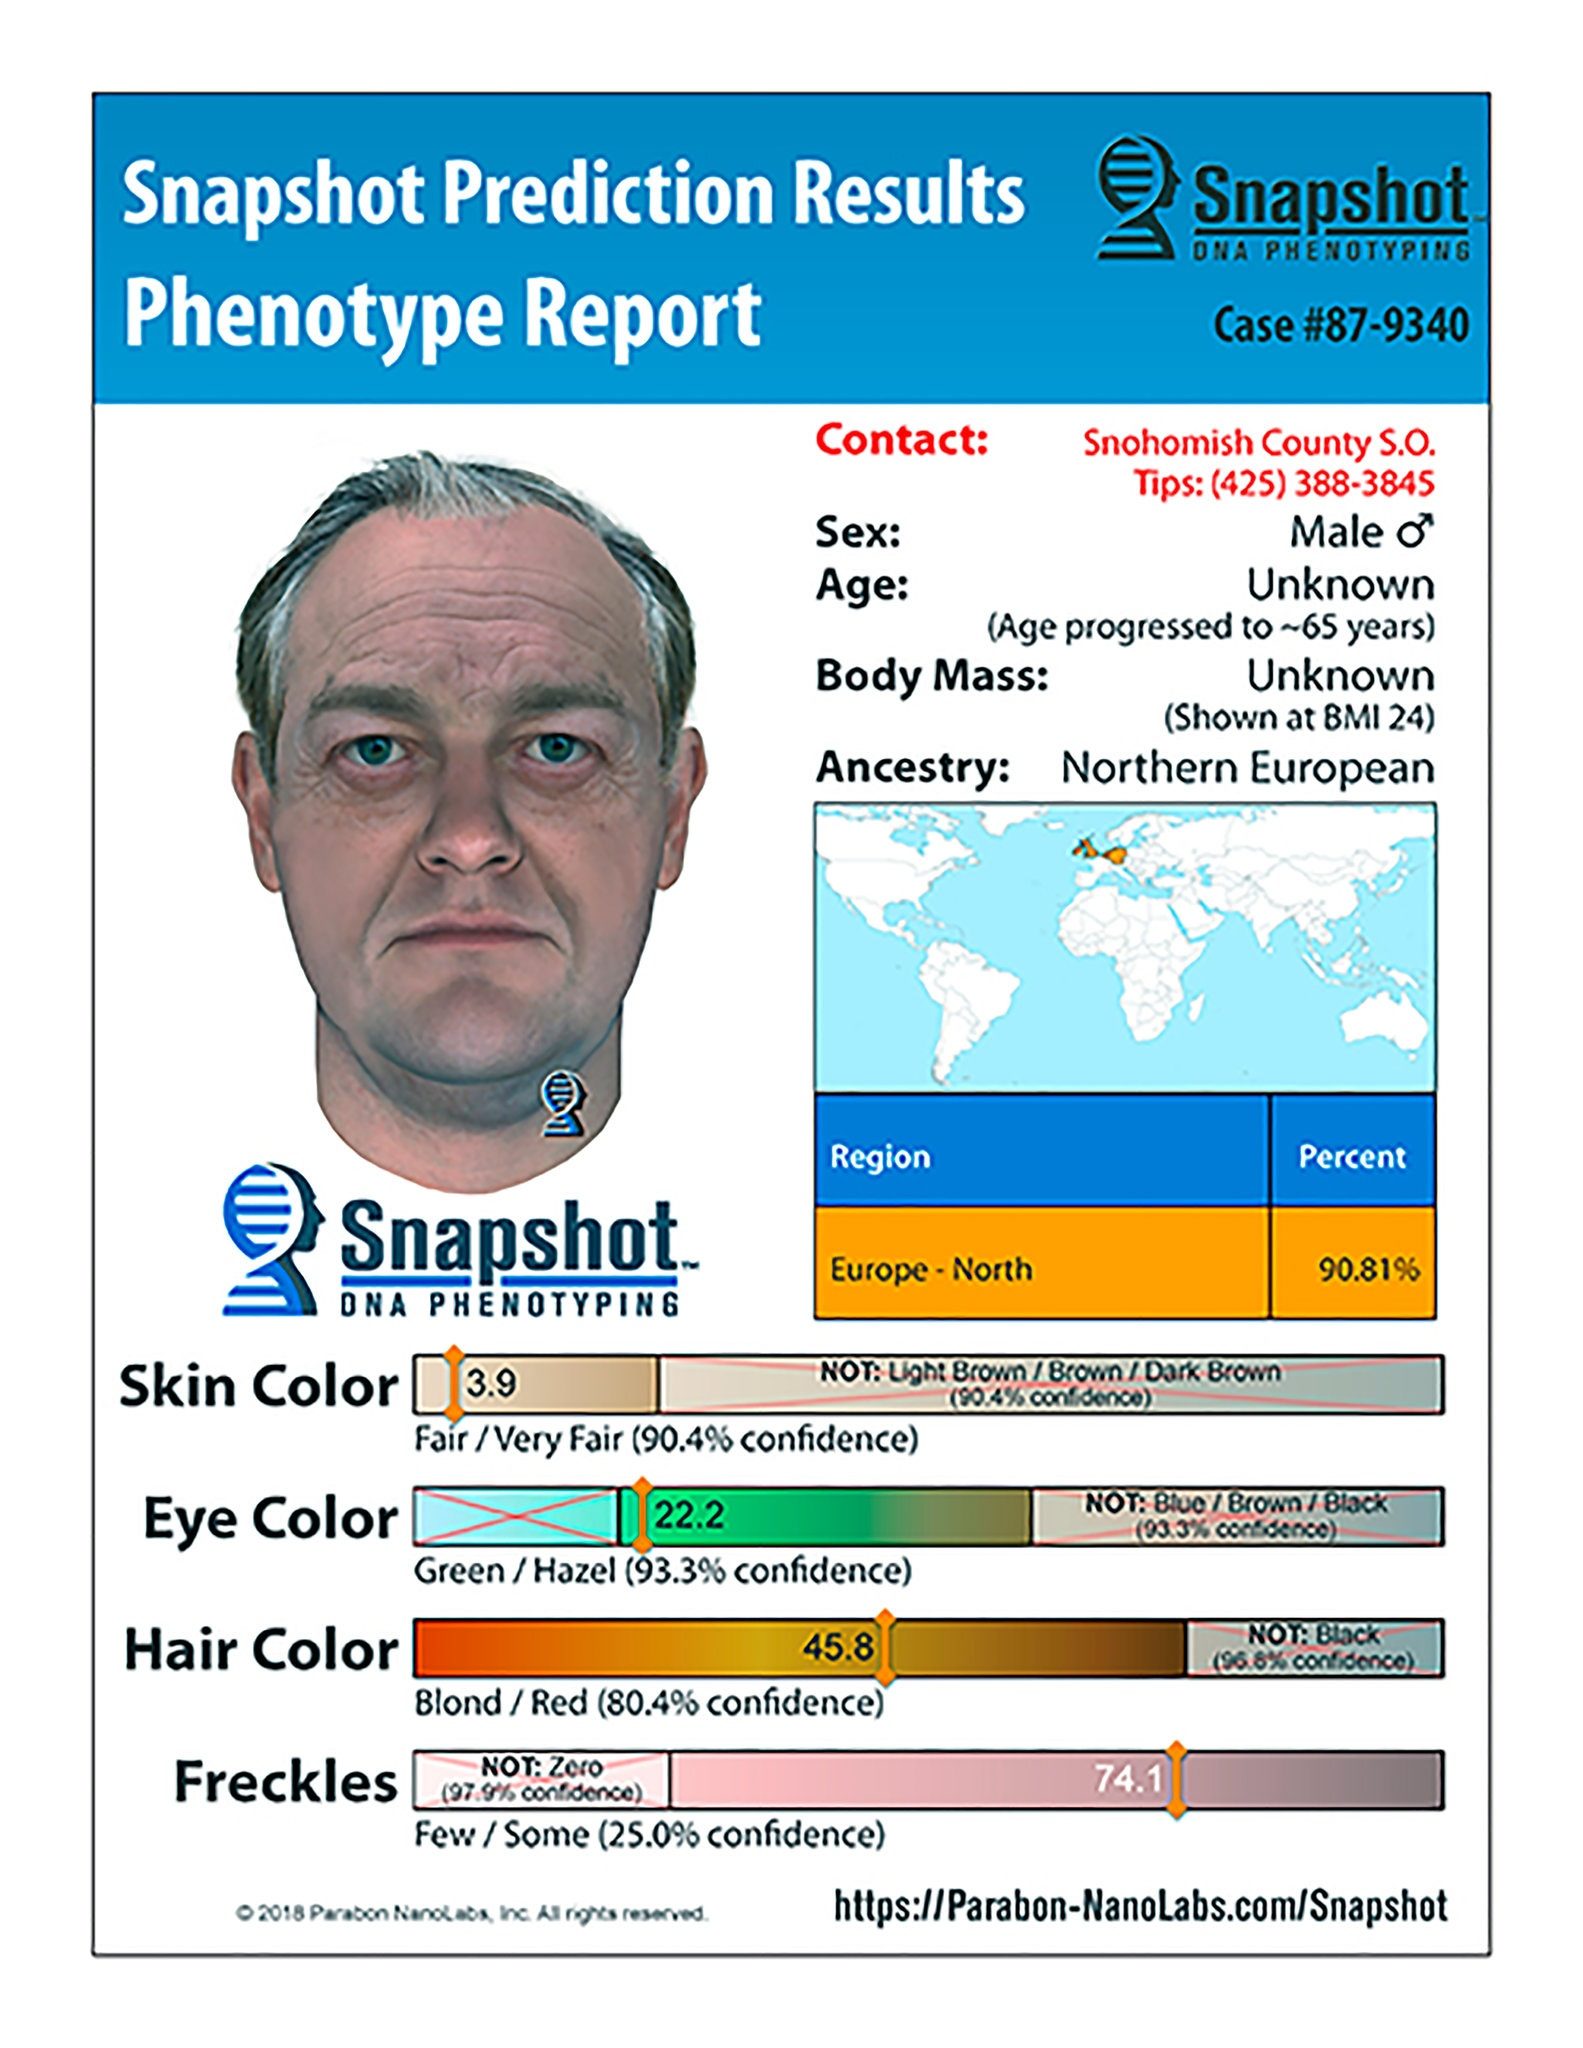 geneology snapshot murder suspect